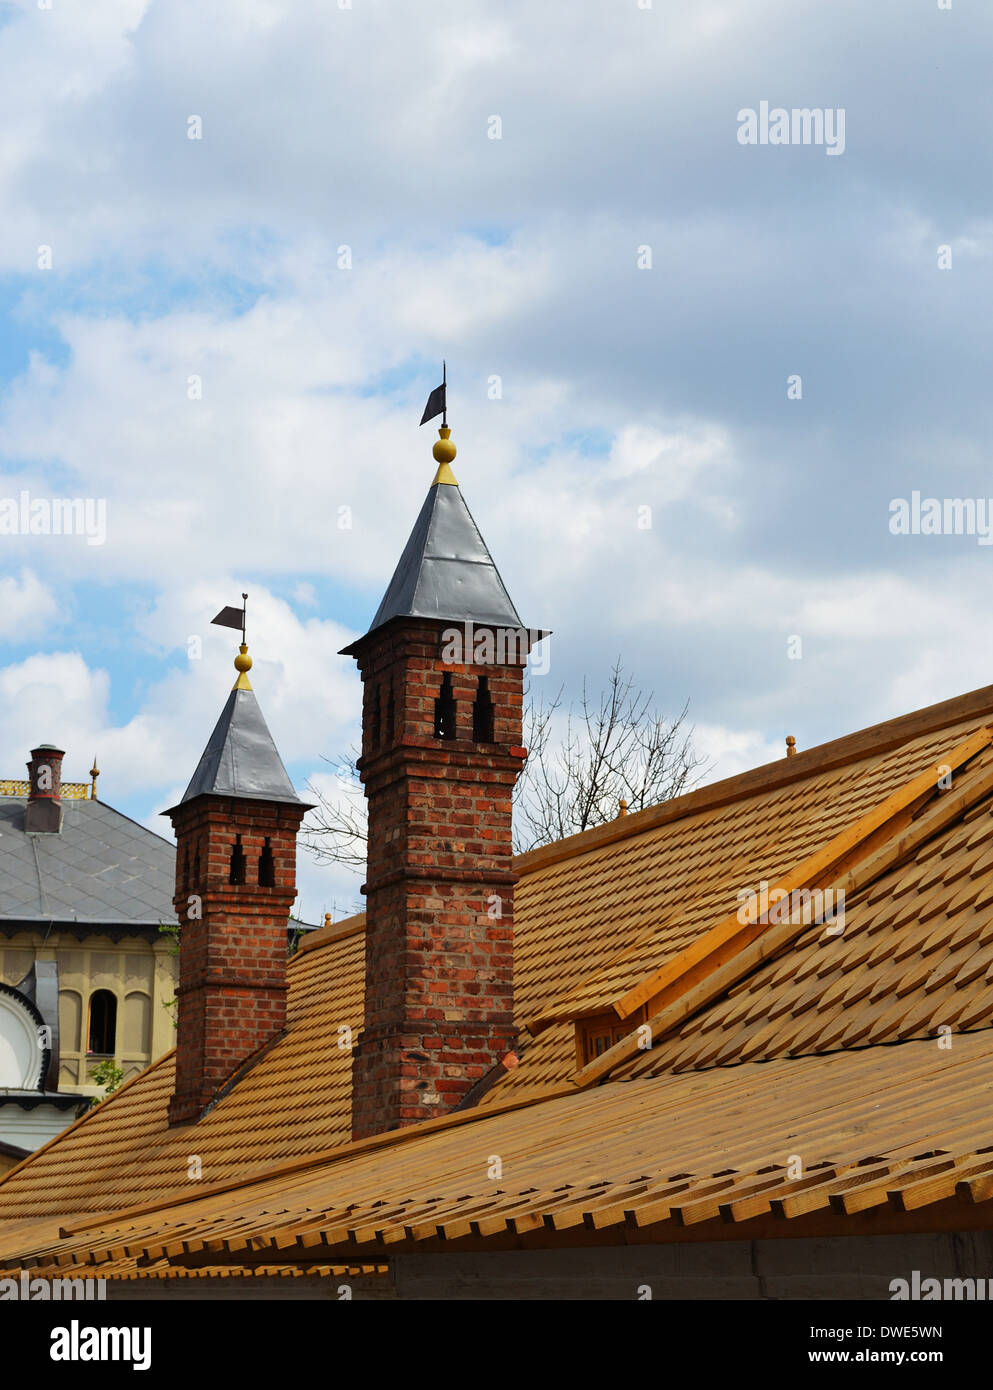 Schornstein auf dem Dach eines alten Hauses Stockfoto